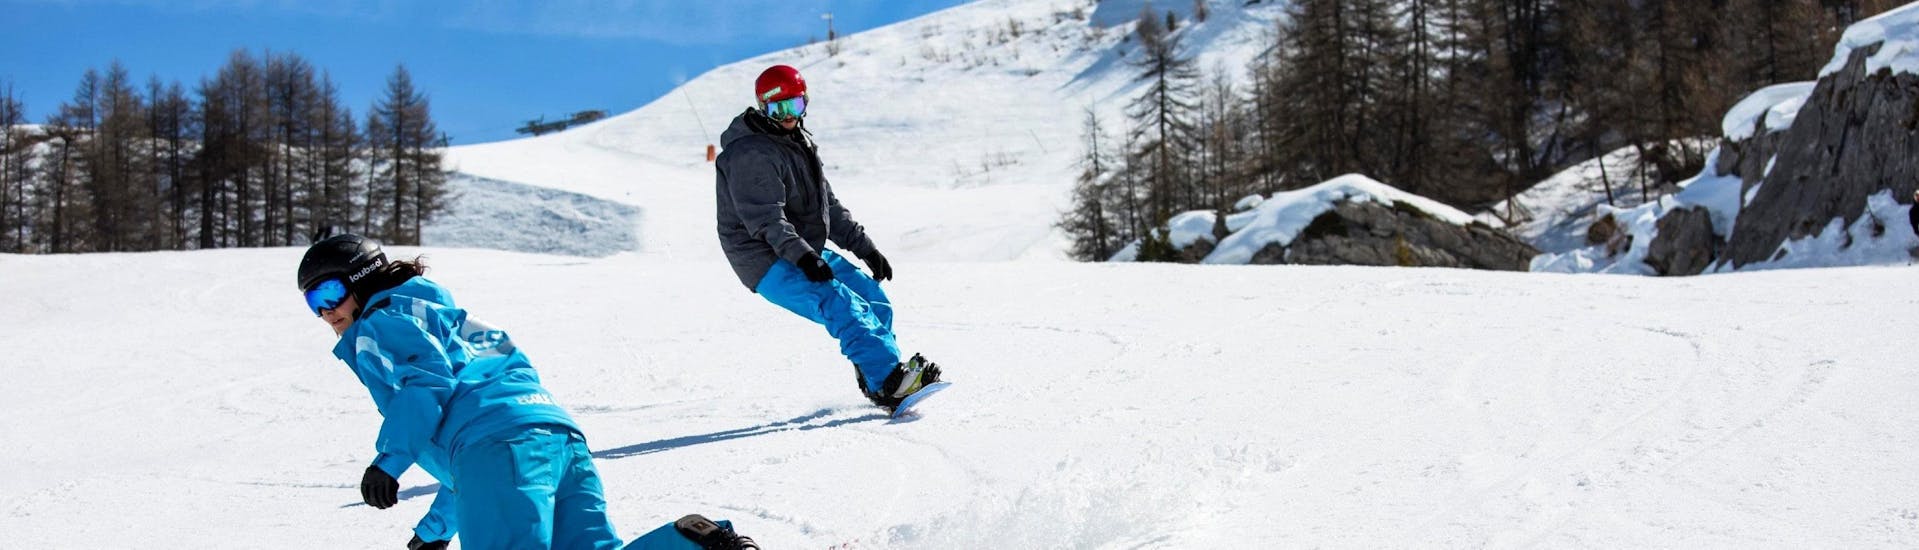 Clases de snowboard privadas a partir de 8 años para todos los niveles.